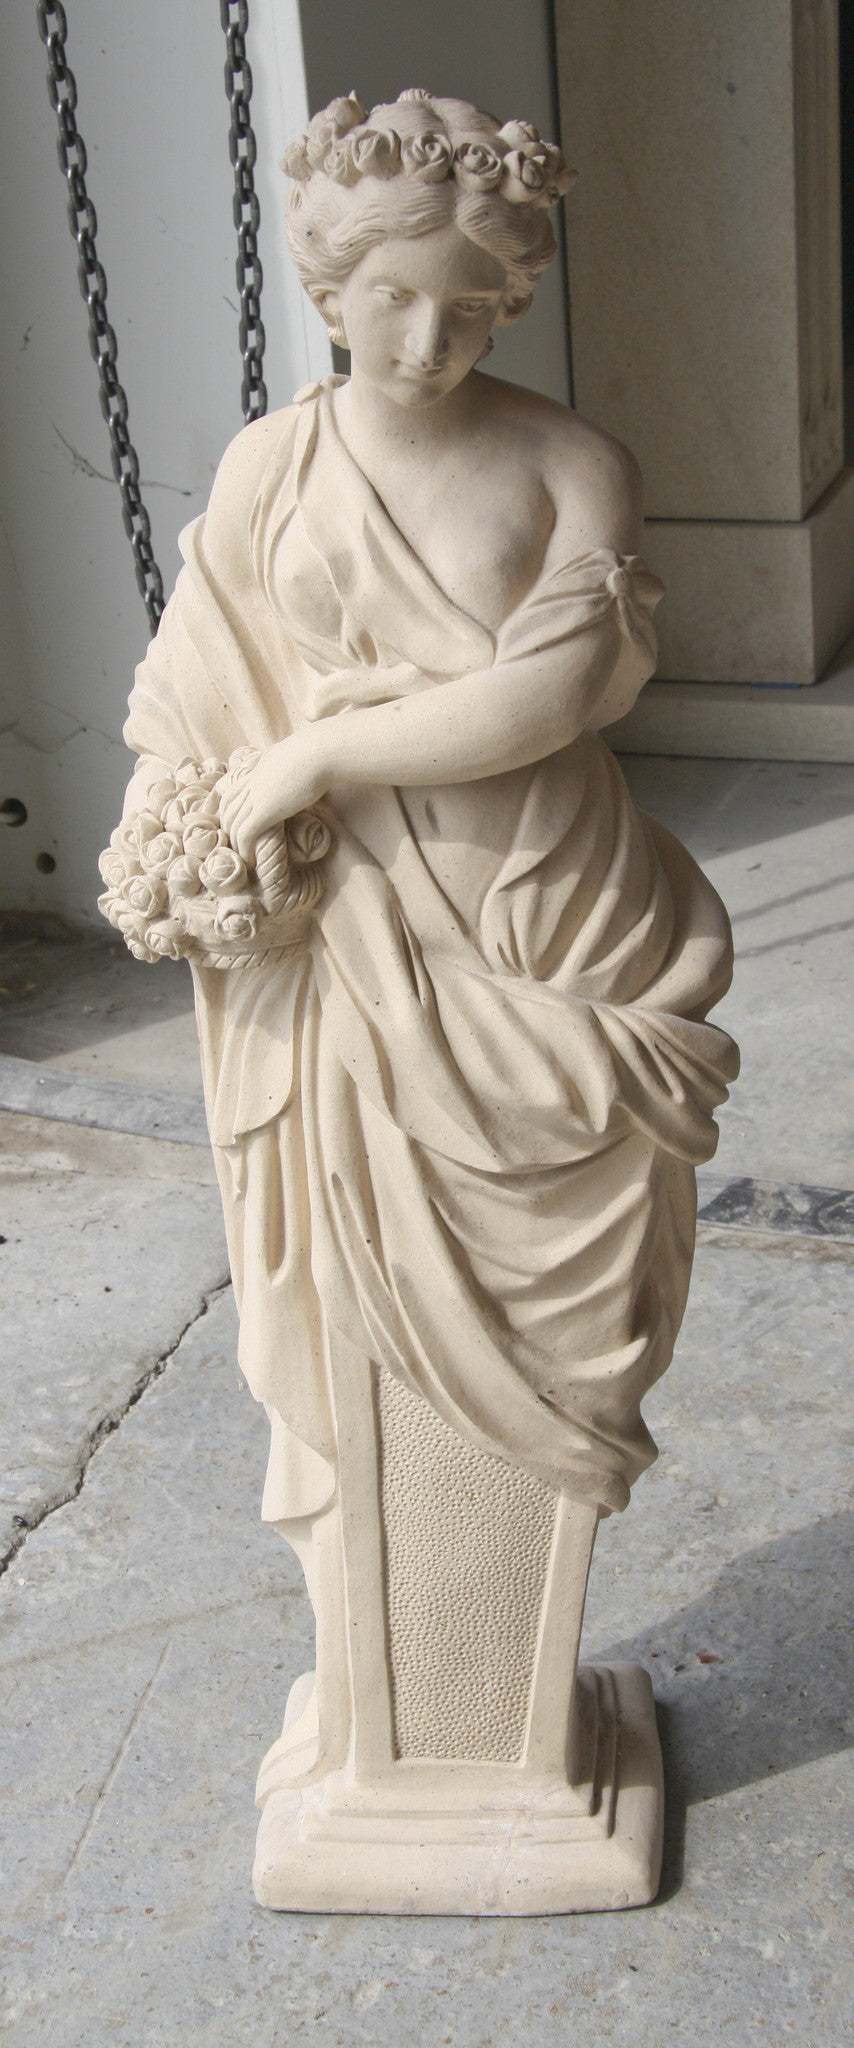 Terracotta garden statue of Summer